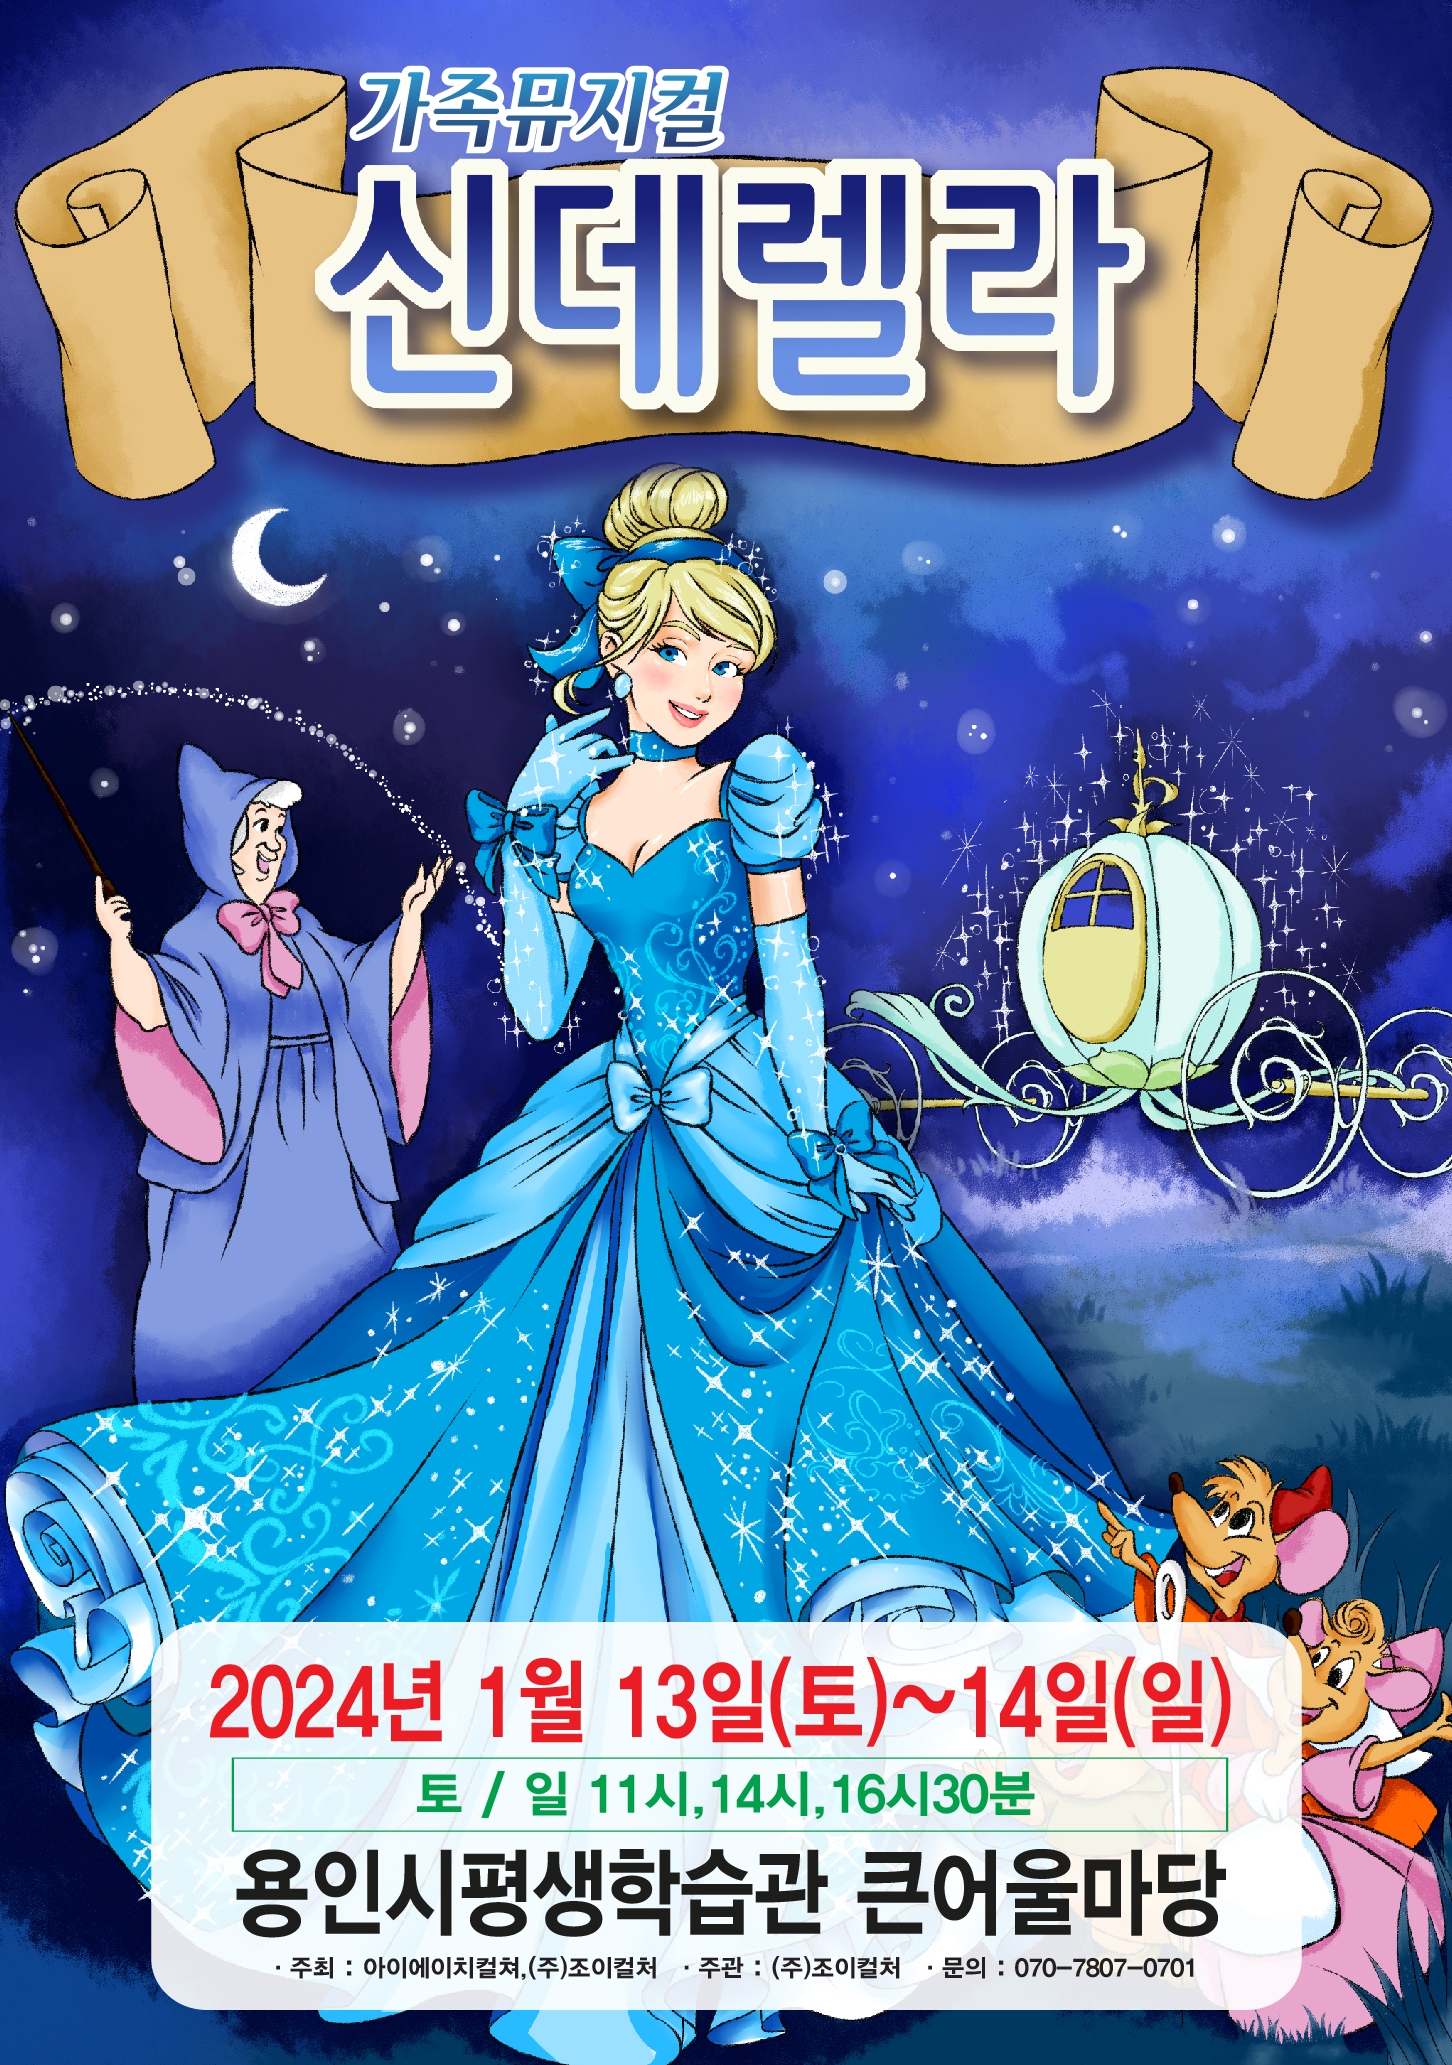 2024 라이브 가족뮤지컬 <신데렐라> 홍보포스터